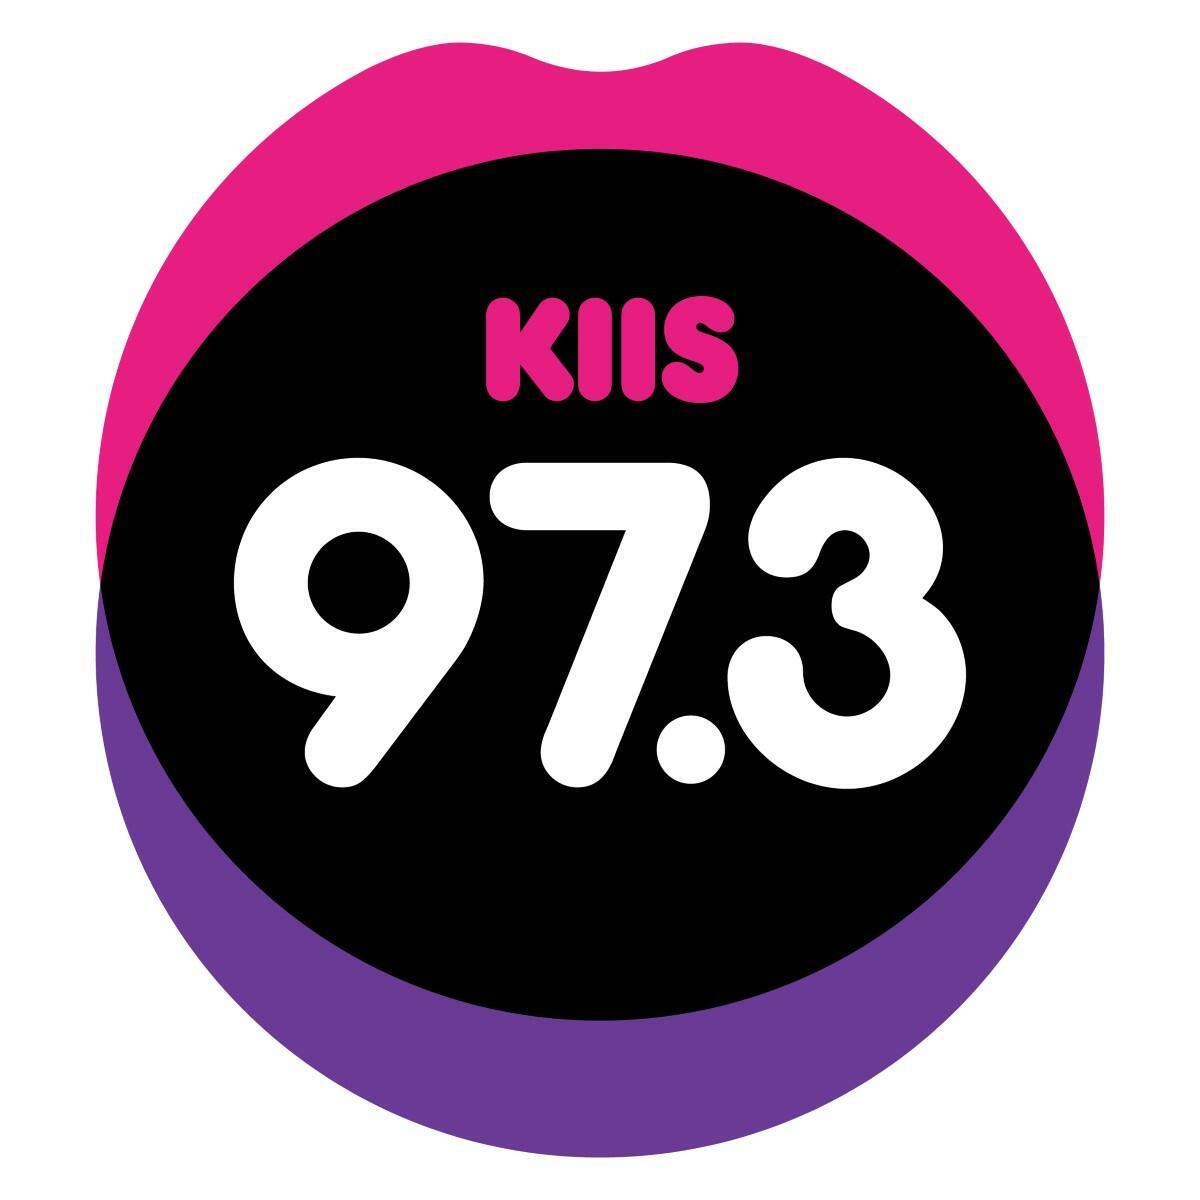 KIIS 97.3FM